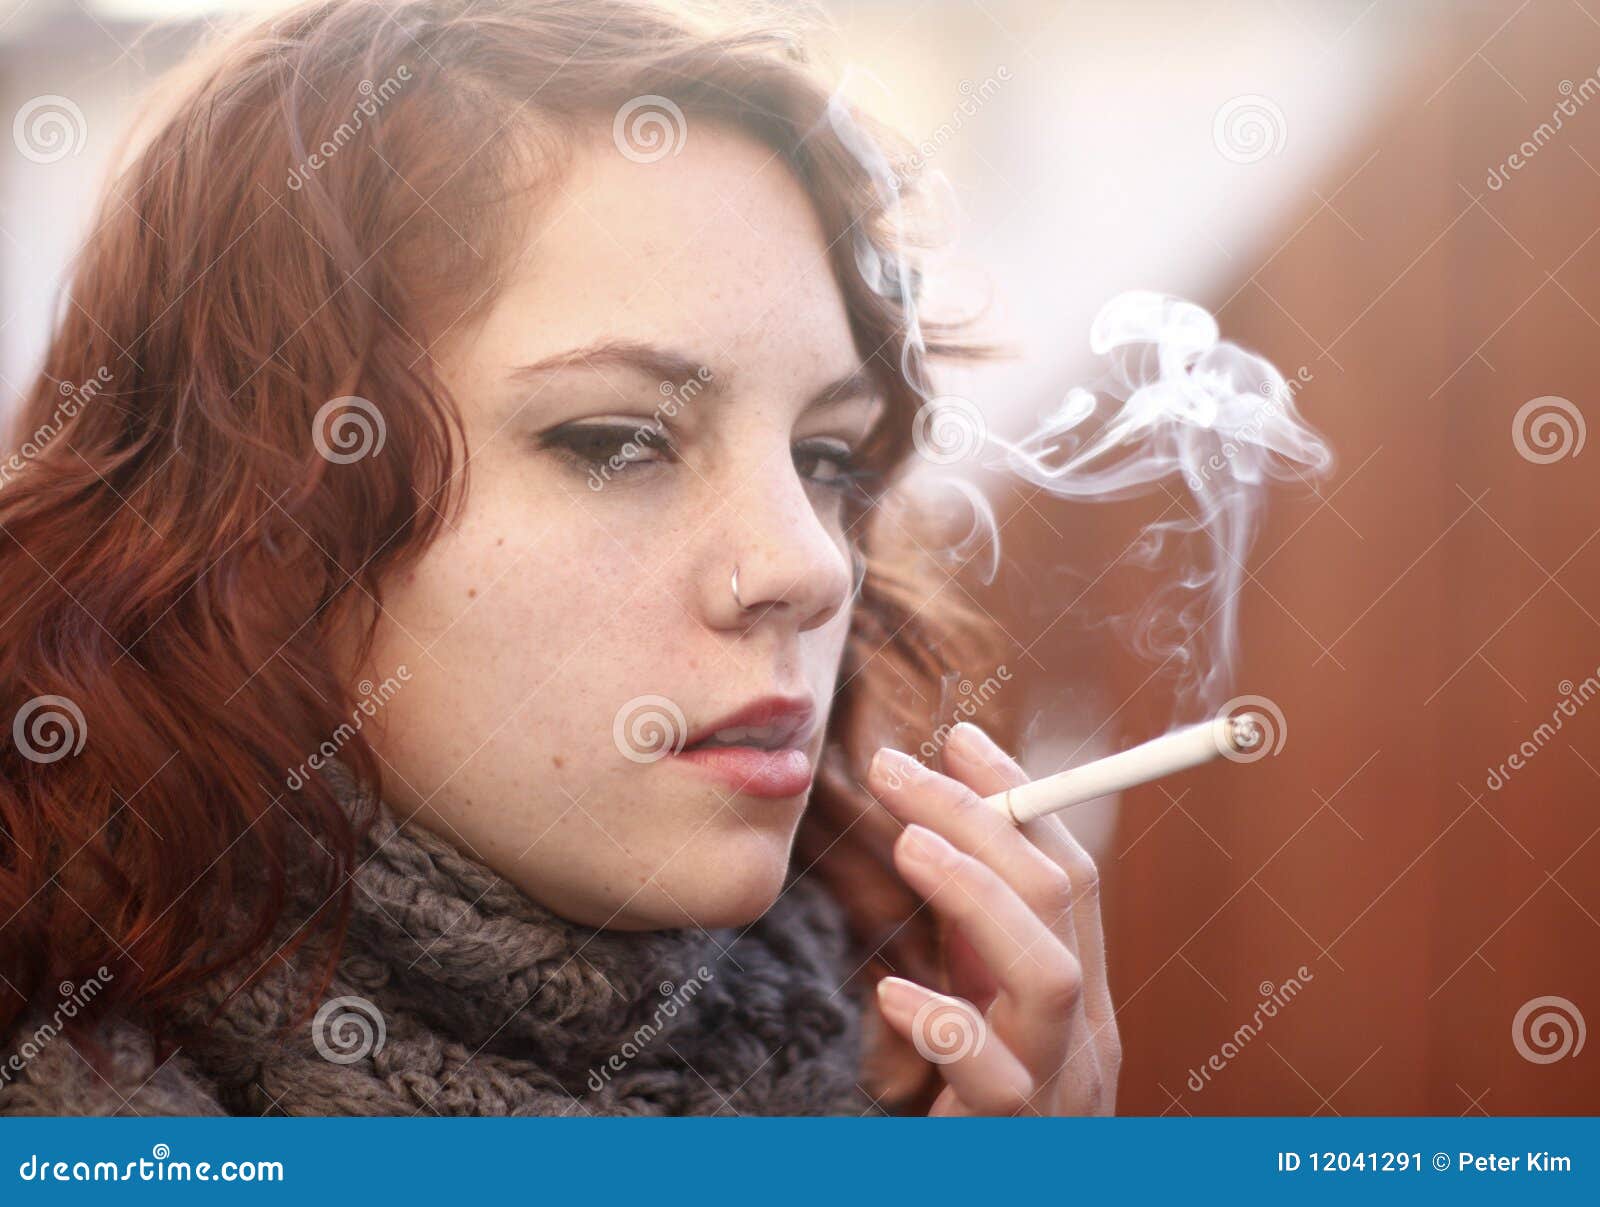 超清社会图片霸气女抽烟大图 _女生图片 - 女人吧